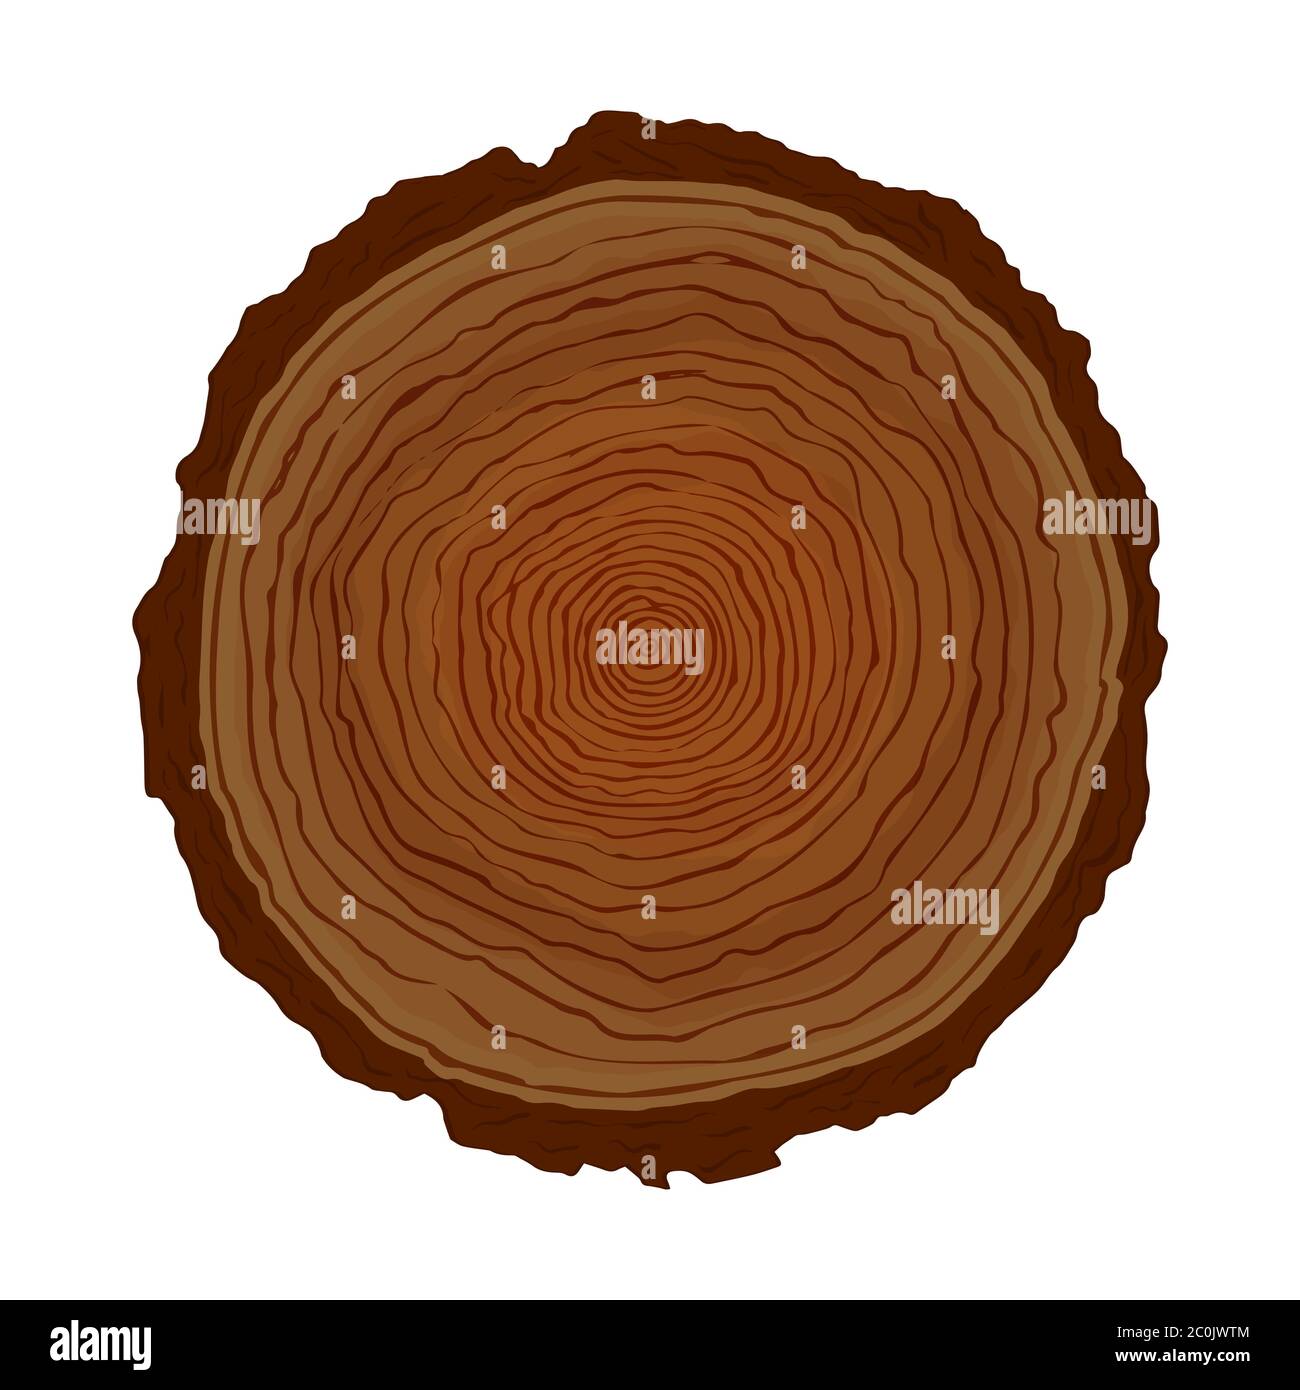 Holzbaum Kreis geschnitten mit natürlichen Ringformen auf isoliertem weißem Hintergrund. Handgezeichnete Holzstamm Illustration für wissenschaftliche Studie über Pflanzenalterswachstum Stock Vektor